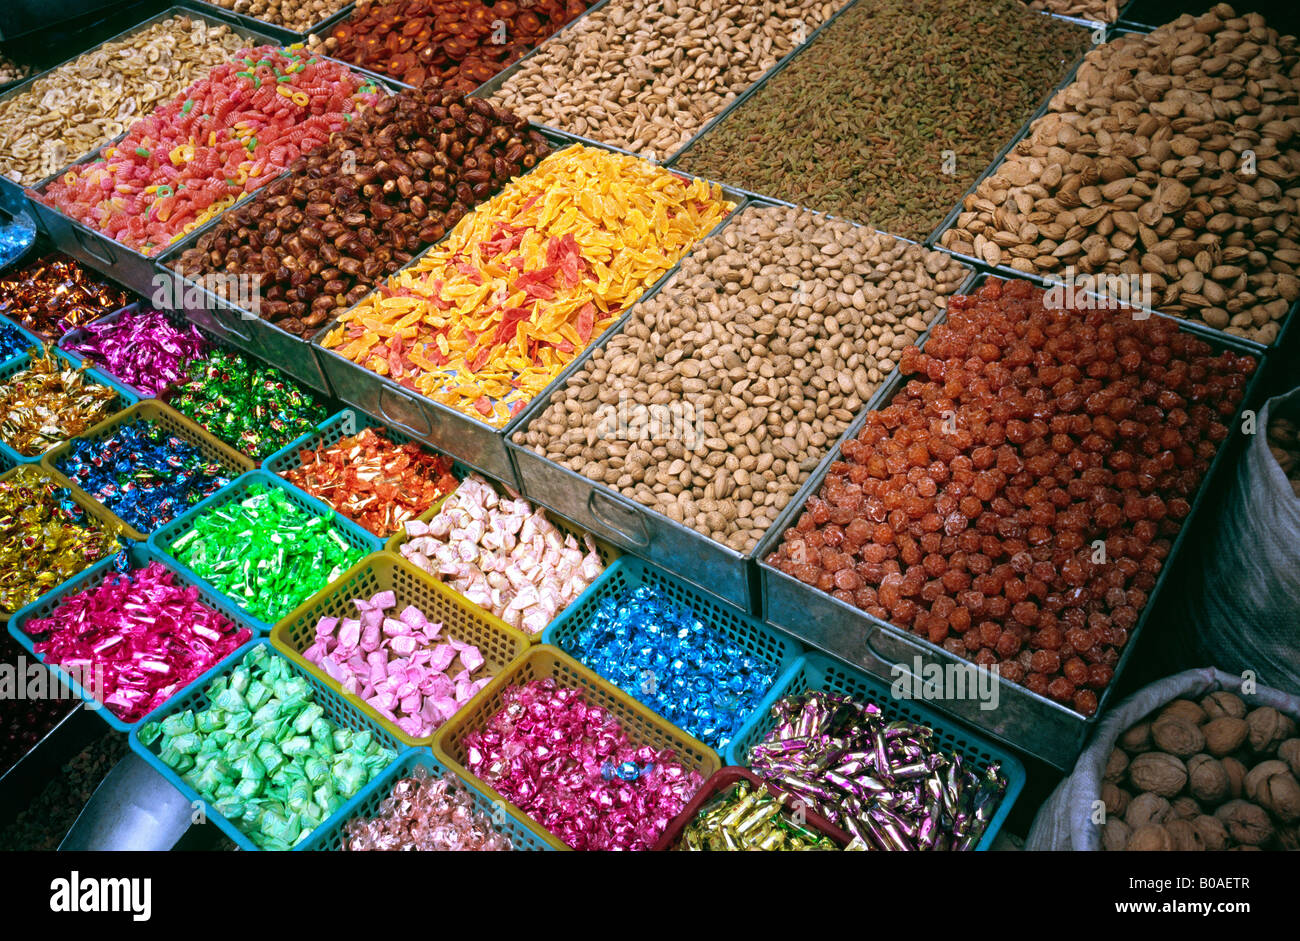 2 luglio 2006 - frutta secca e dolci per la vendita a Kashgar il mercato della domenica nella provincia cinese dello Xinjiang. Foto Stock